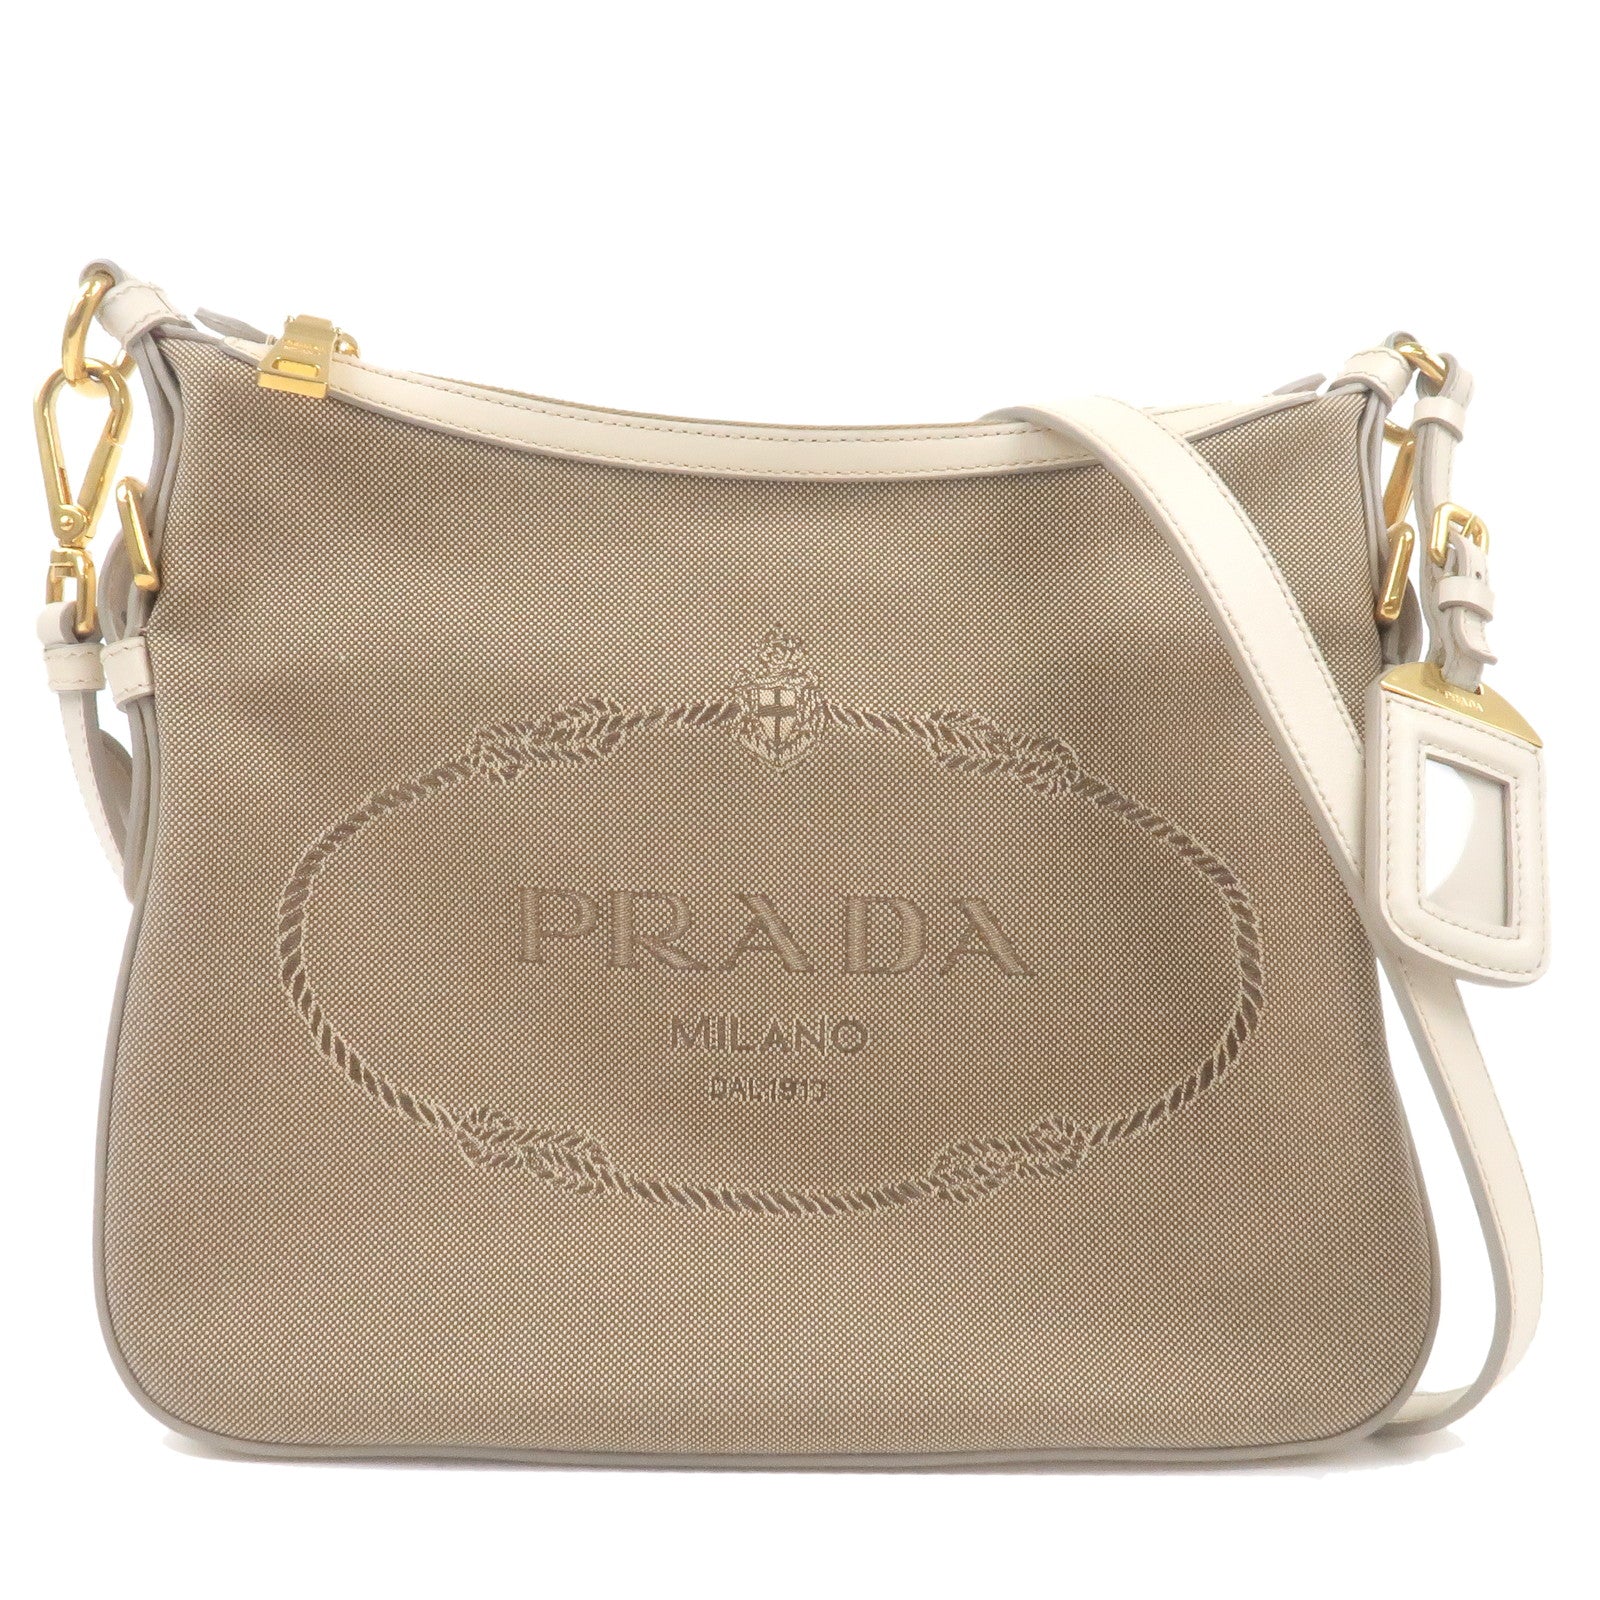 PRADA-Logo-Jacquard-Leather-Shoulder-Bag-Beige-Ivory-BT0706